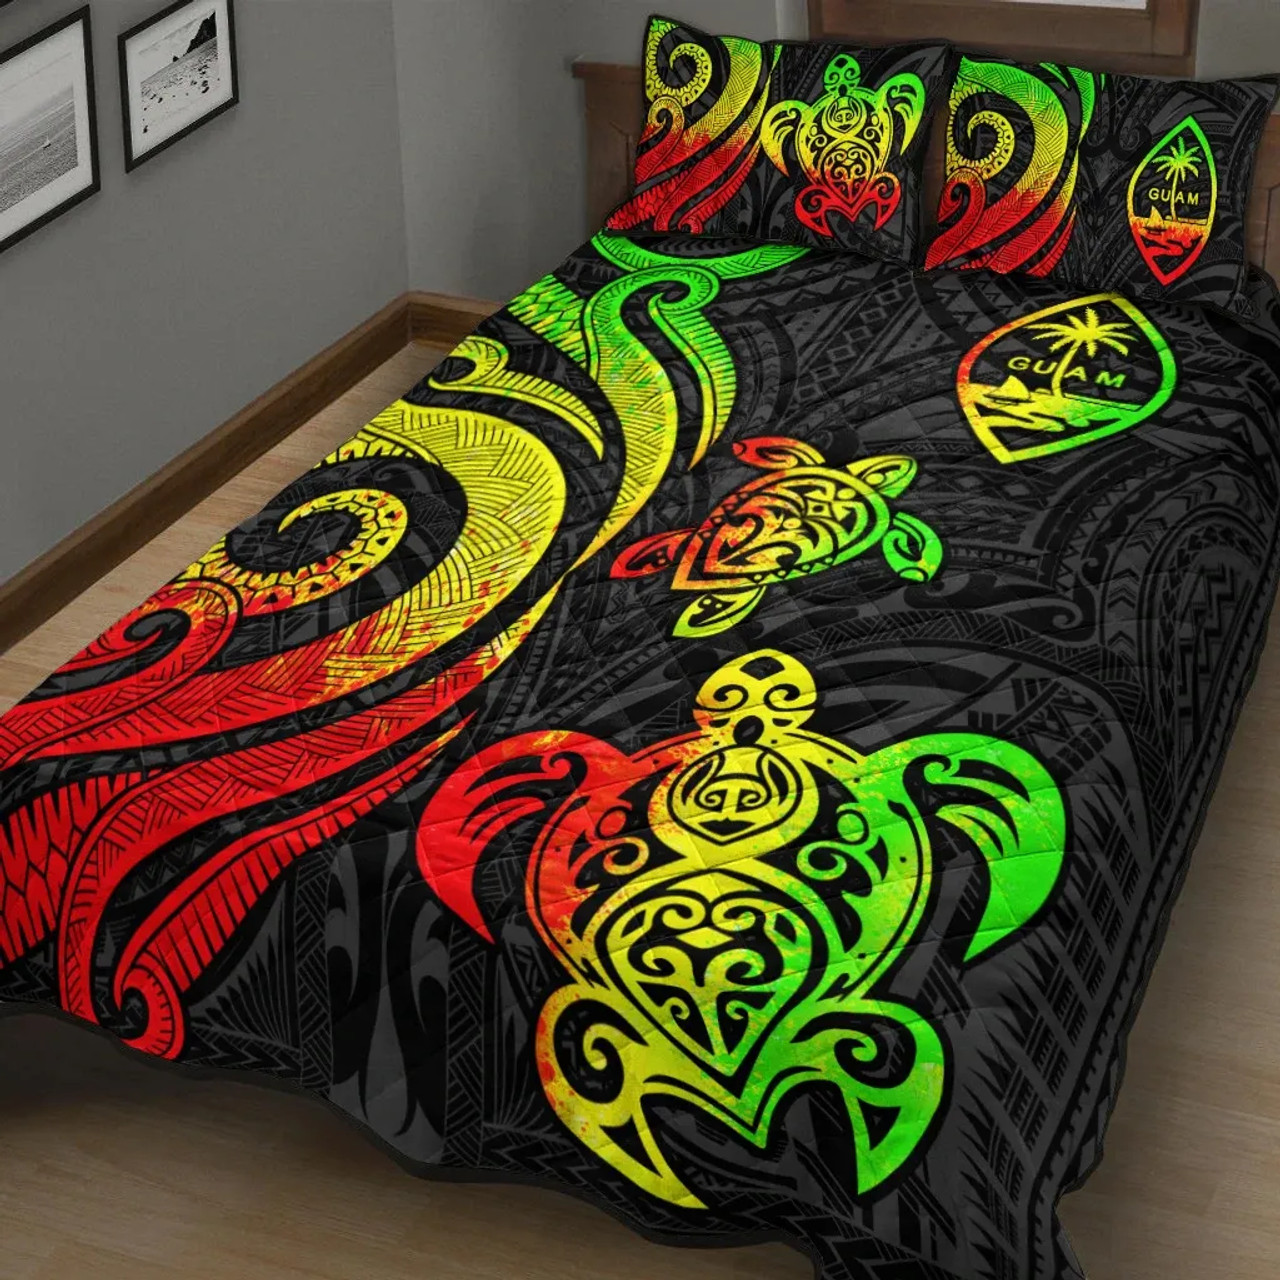 Guam Quilt Bed Set - Reggae Tentacle Turtle 3